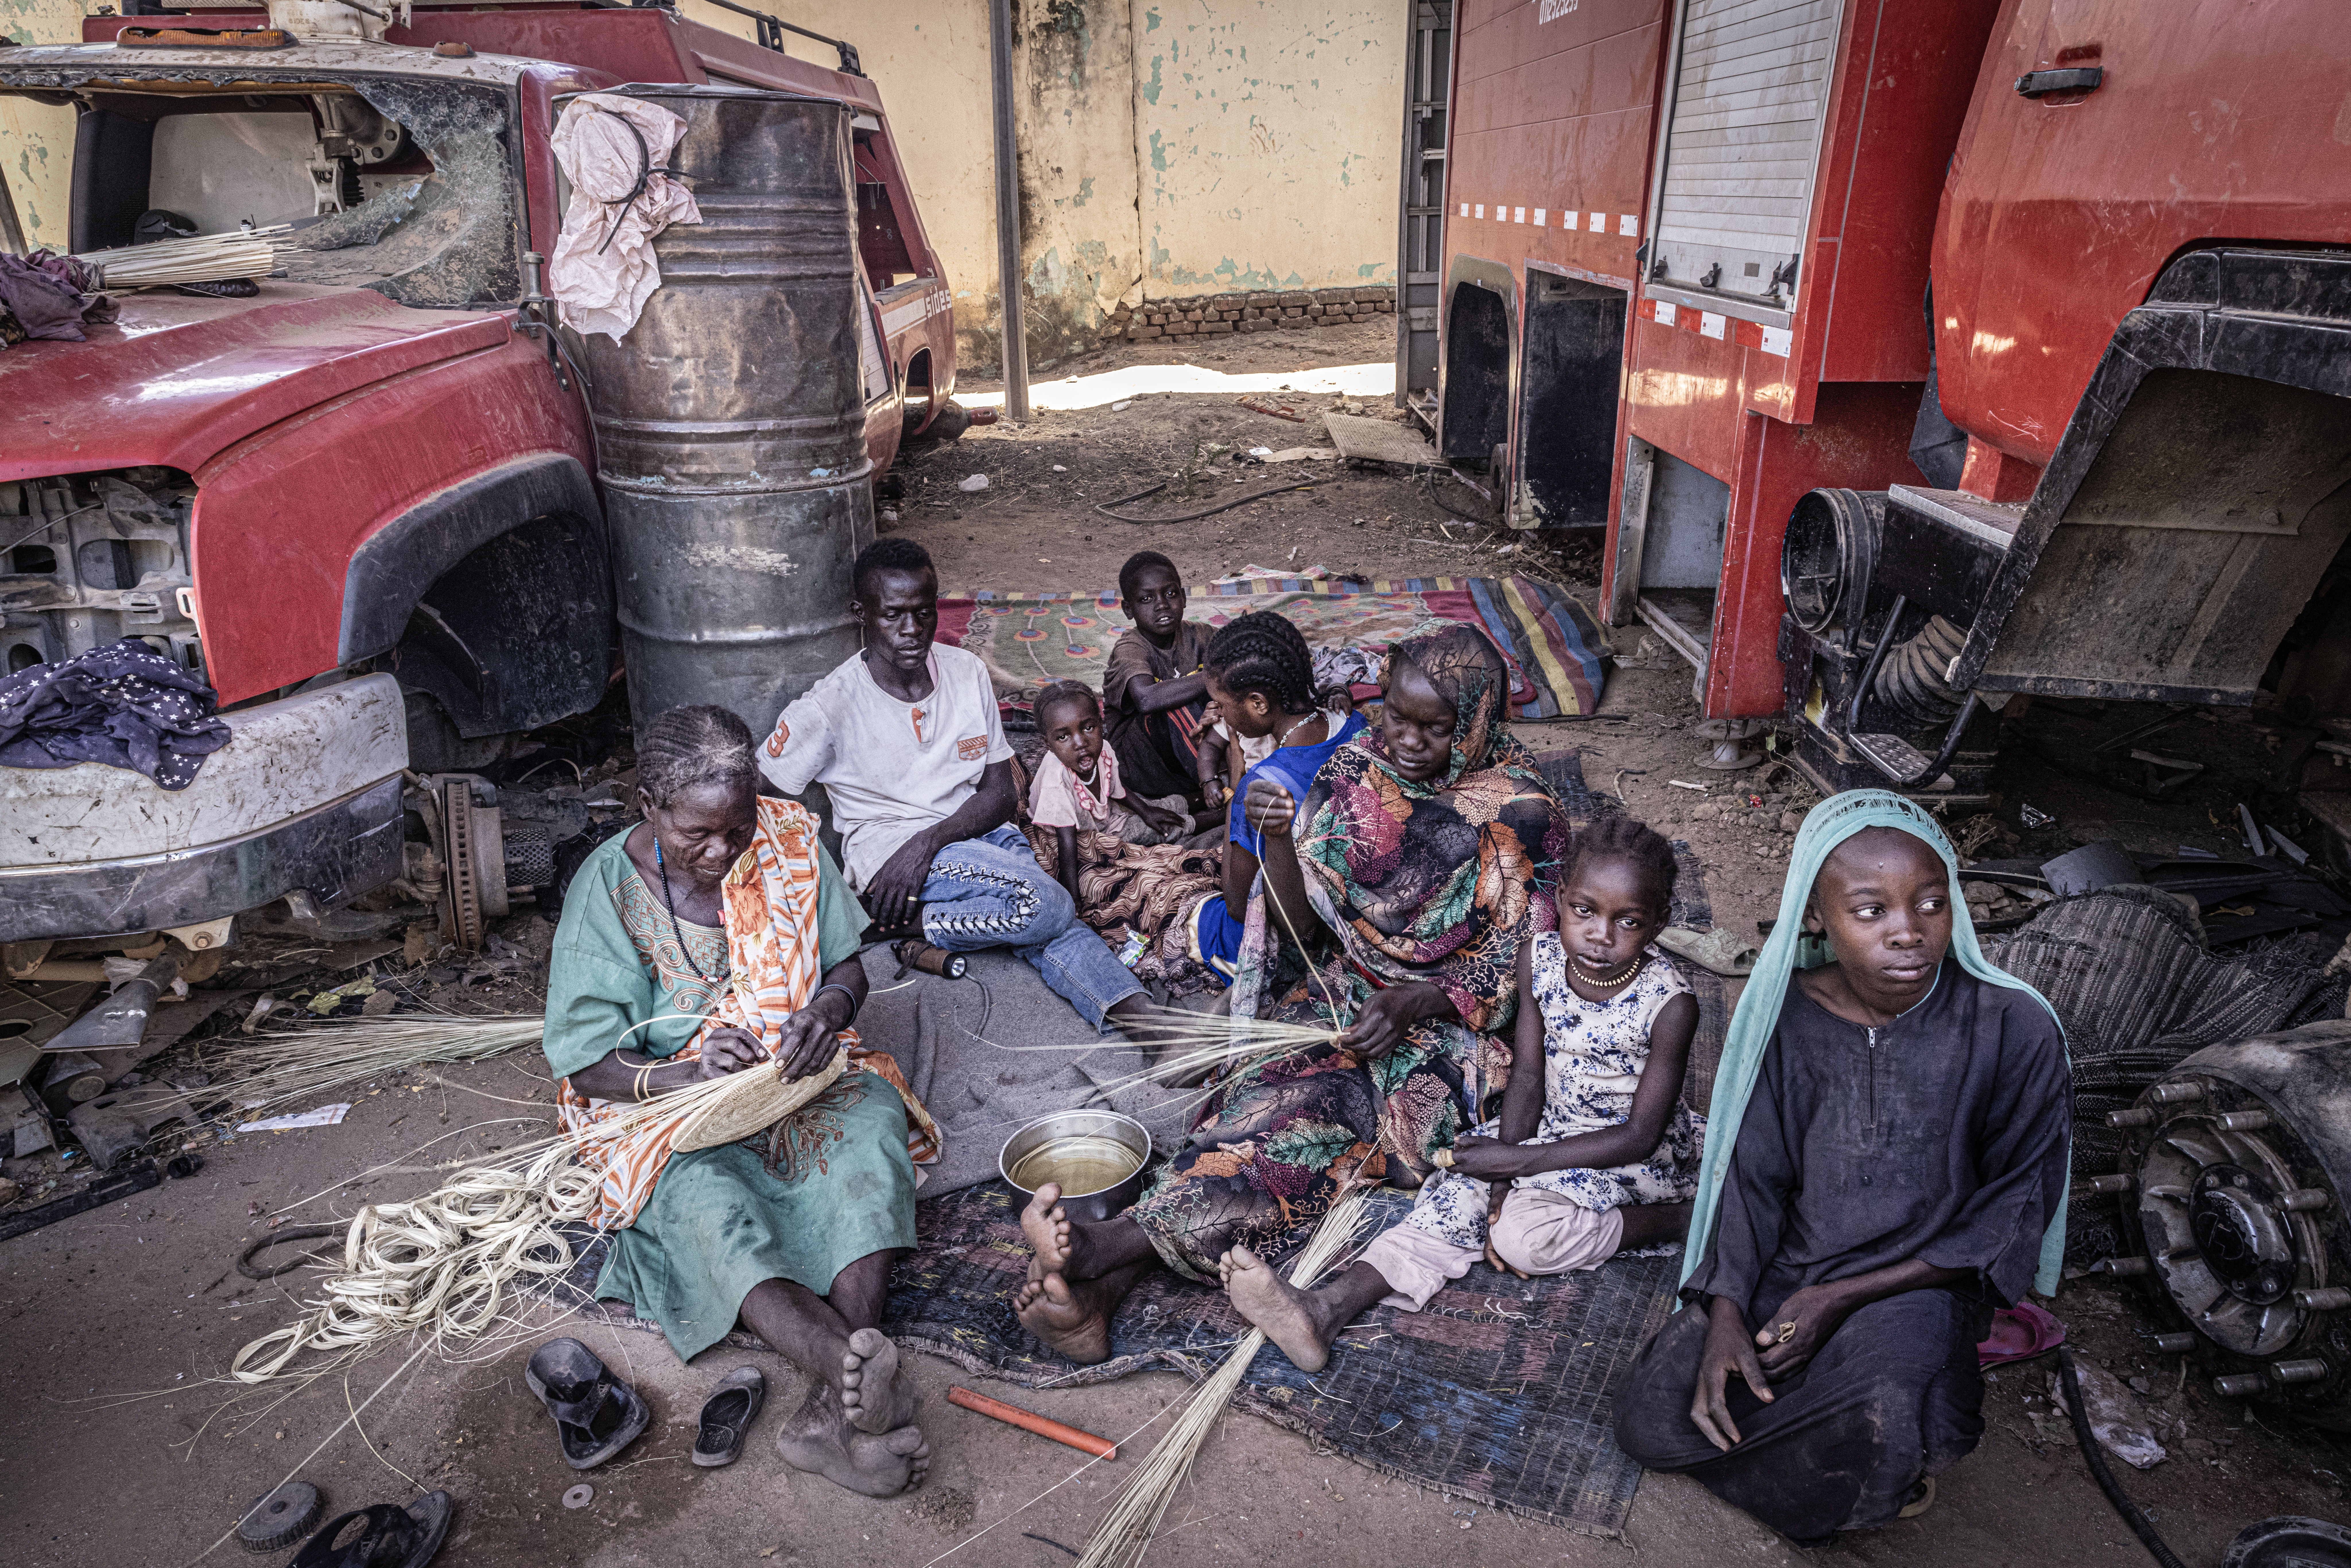 Aissa y su familia llevan meses viviendo en un contenedor de transporte en la devastada estación de bomberos de Zalingei, Darfur Central, trais huir del campamento de desplazados a causa de los combates. © Juan Carlos Tomasi/MSF